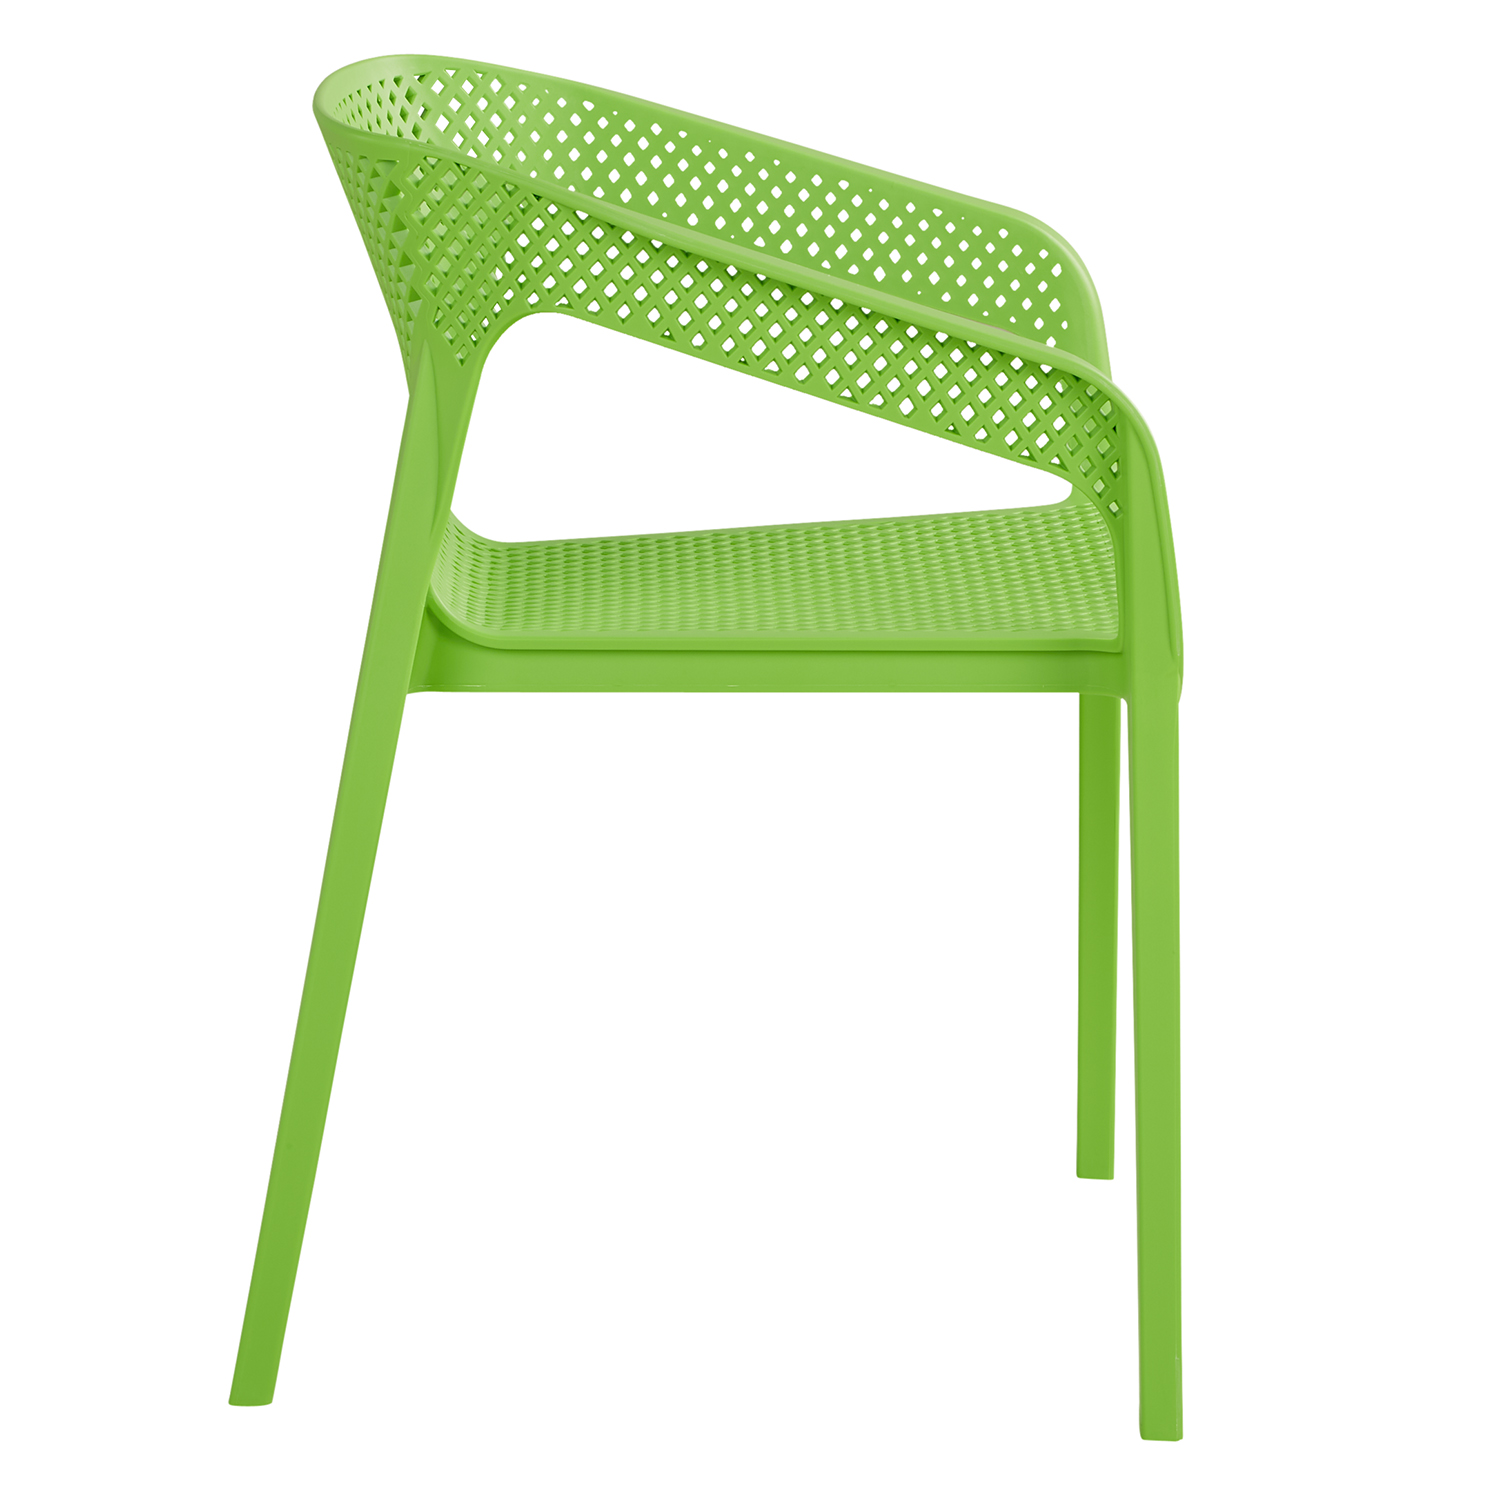 Chaise de jardin avec accoudoirs Vert Lot de 6 Fauteuils de jardin Plastique Chaises exterieur Chaises empilable